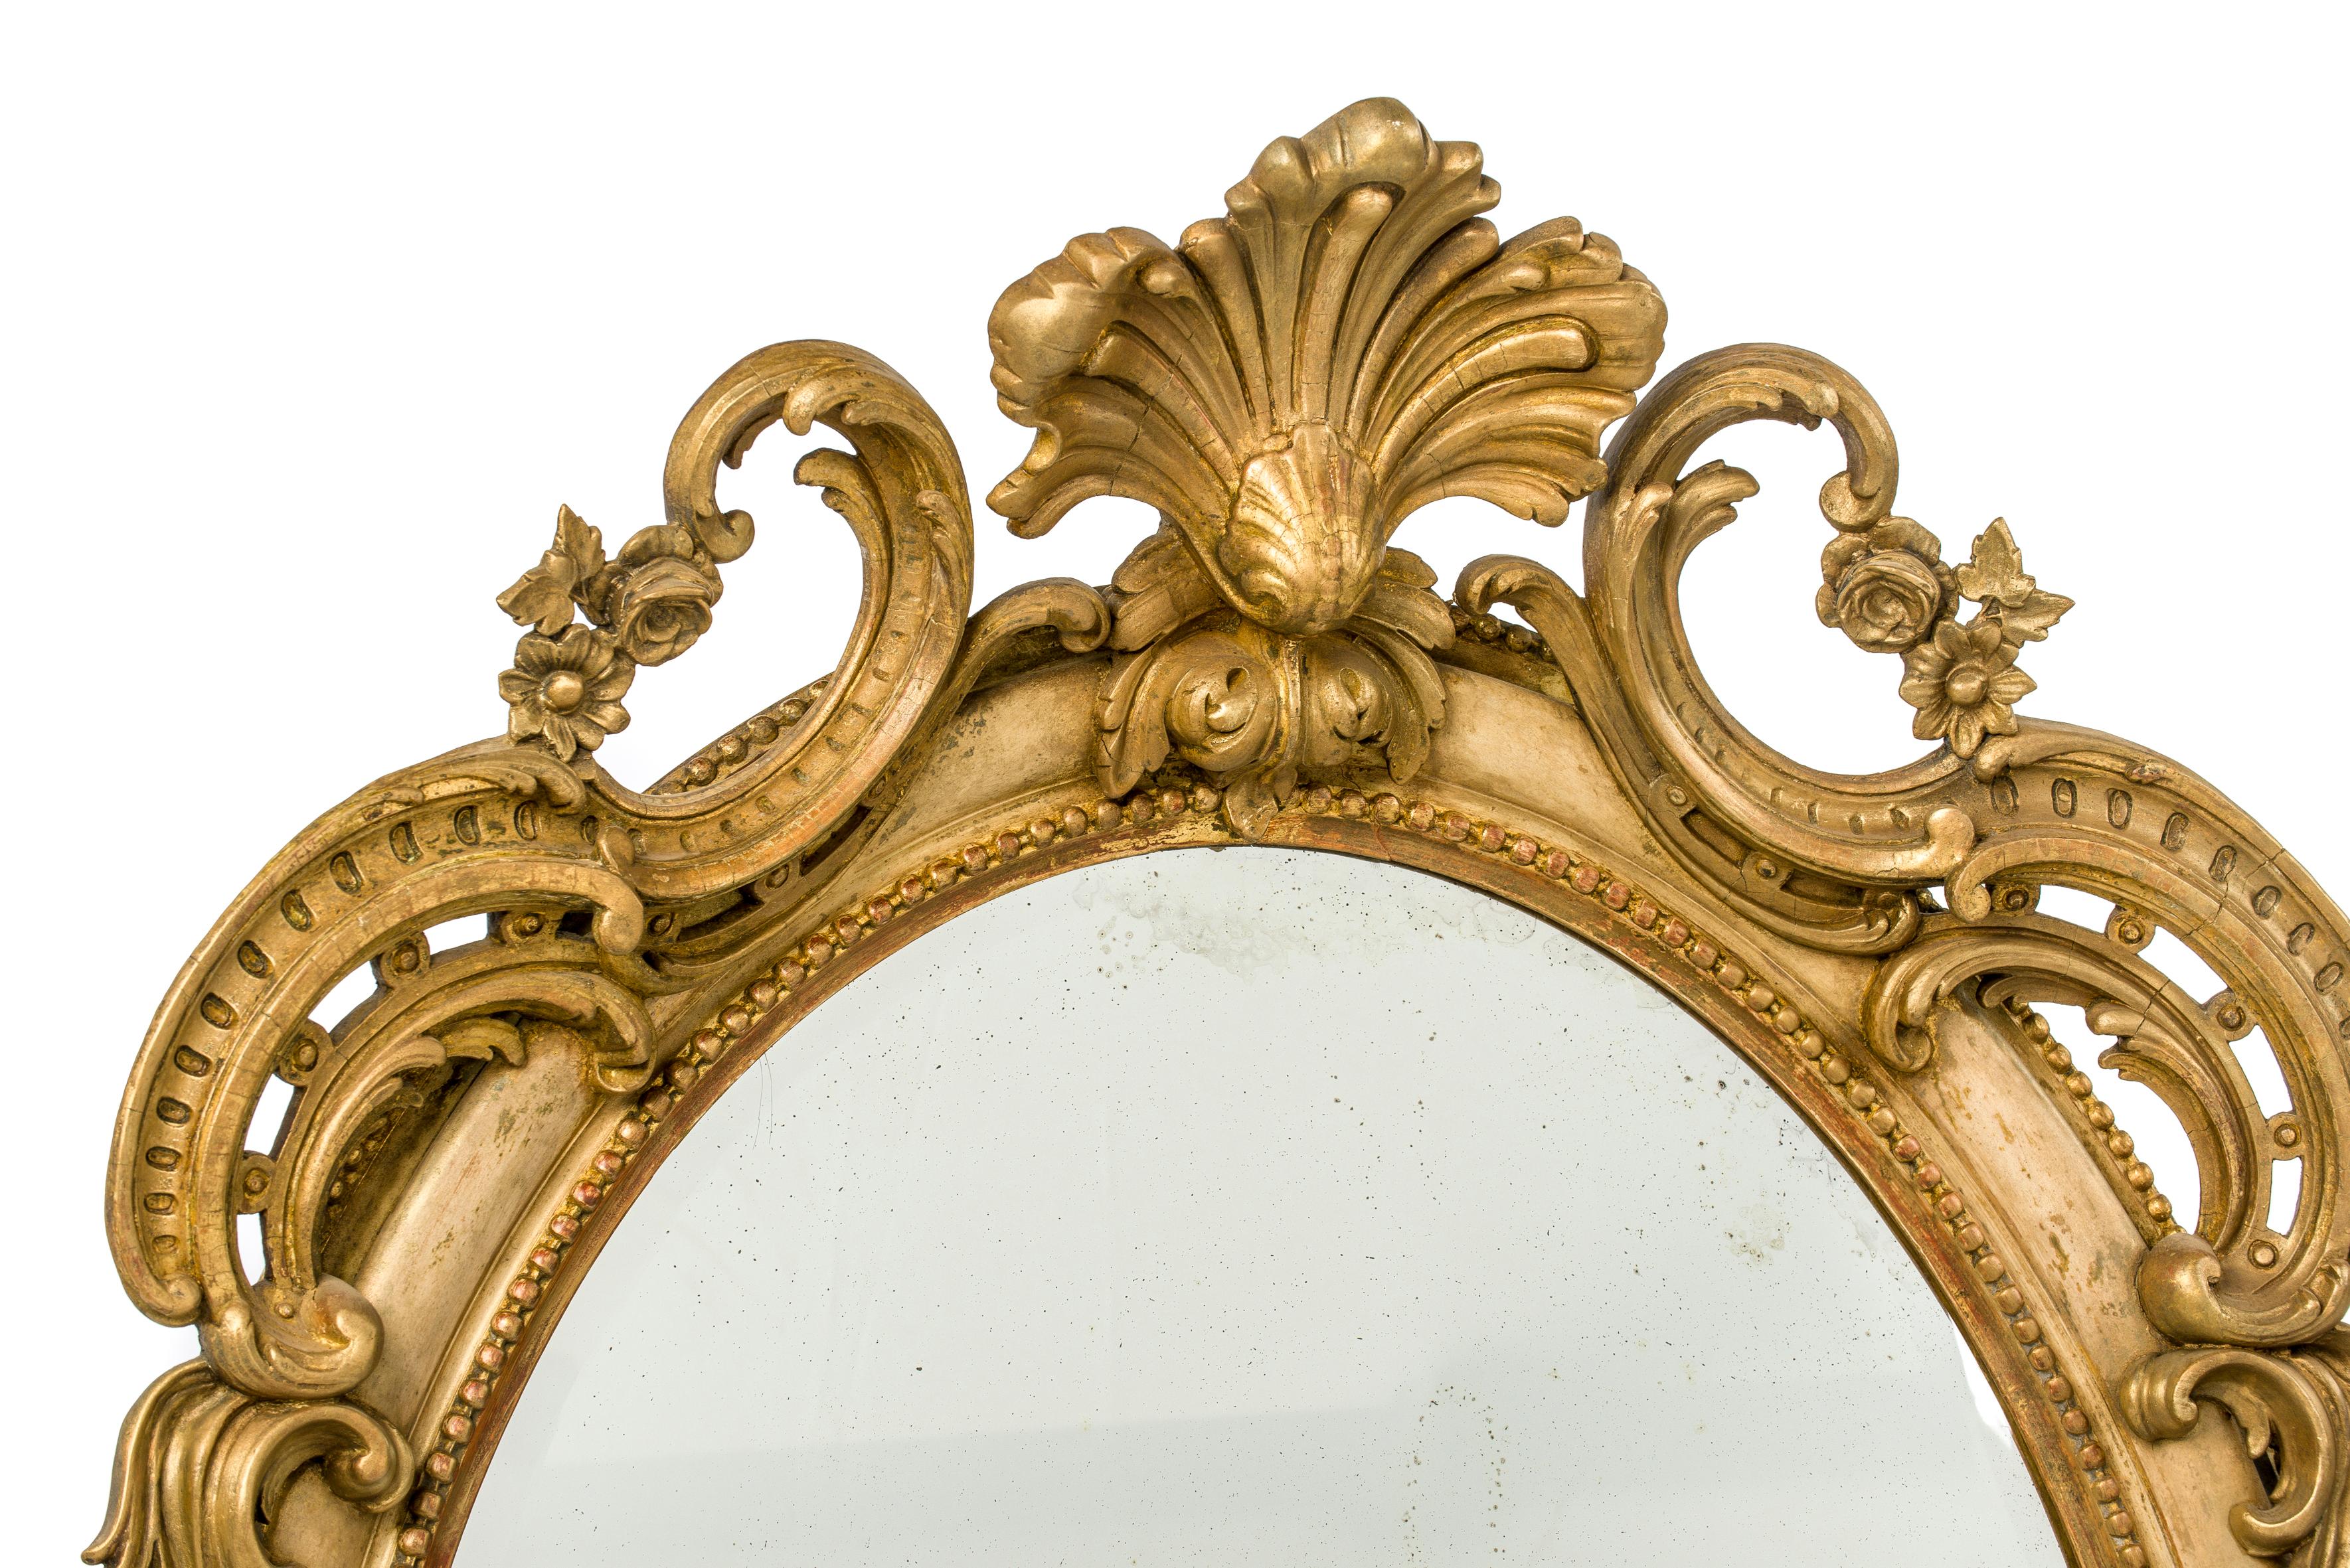 Ein schöner großer ovaler Spiegel mit reichen Verzierungen und originaler facettierter Spiegelplatte. 
Der Spiegel hat ein sehr warmes, antikes Aussehen und Gefühl. Der Spiegel hat eine verzierte Oberseite mit einer zentralen 